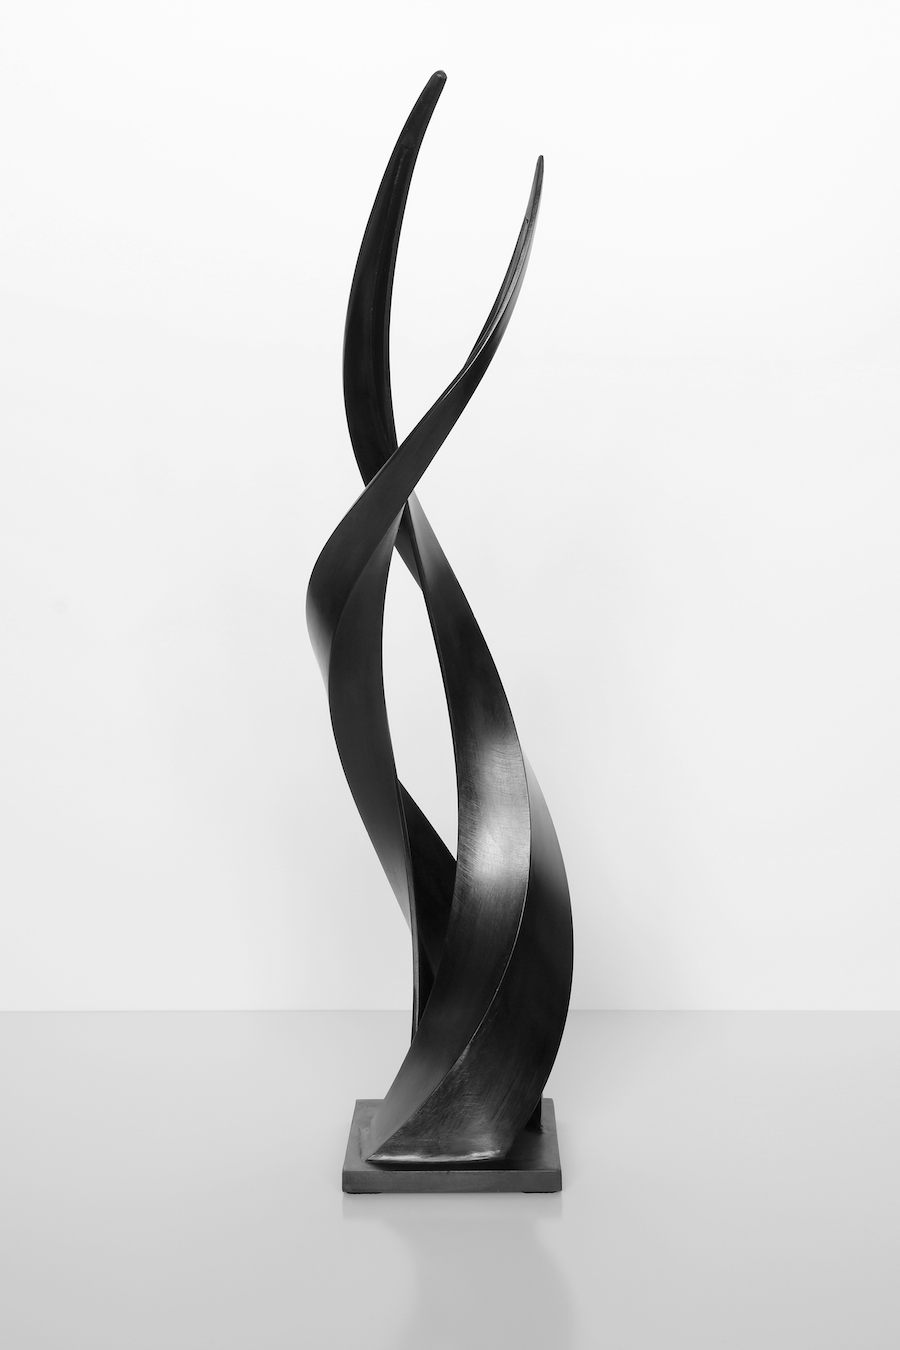 sculpture contemporaine metal aluminium patiné noir de francis guerrier en vente a la galerie22